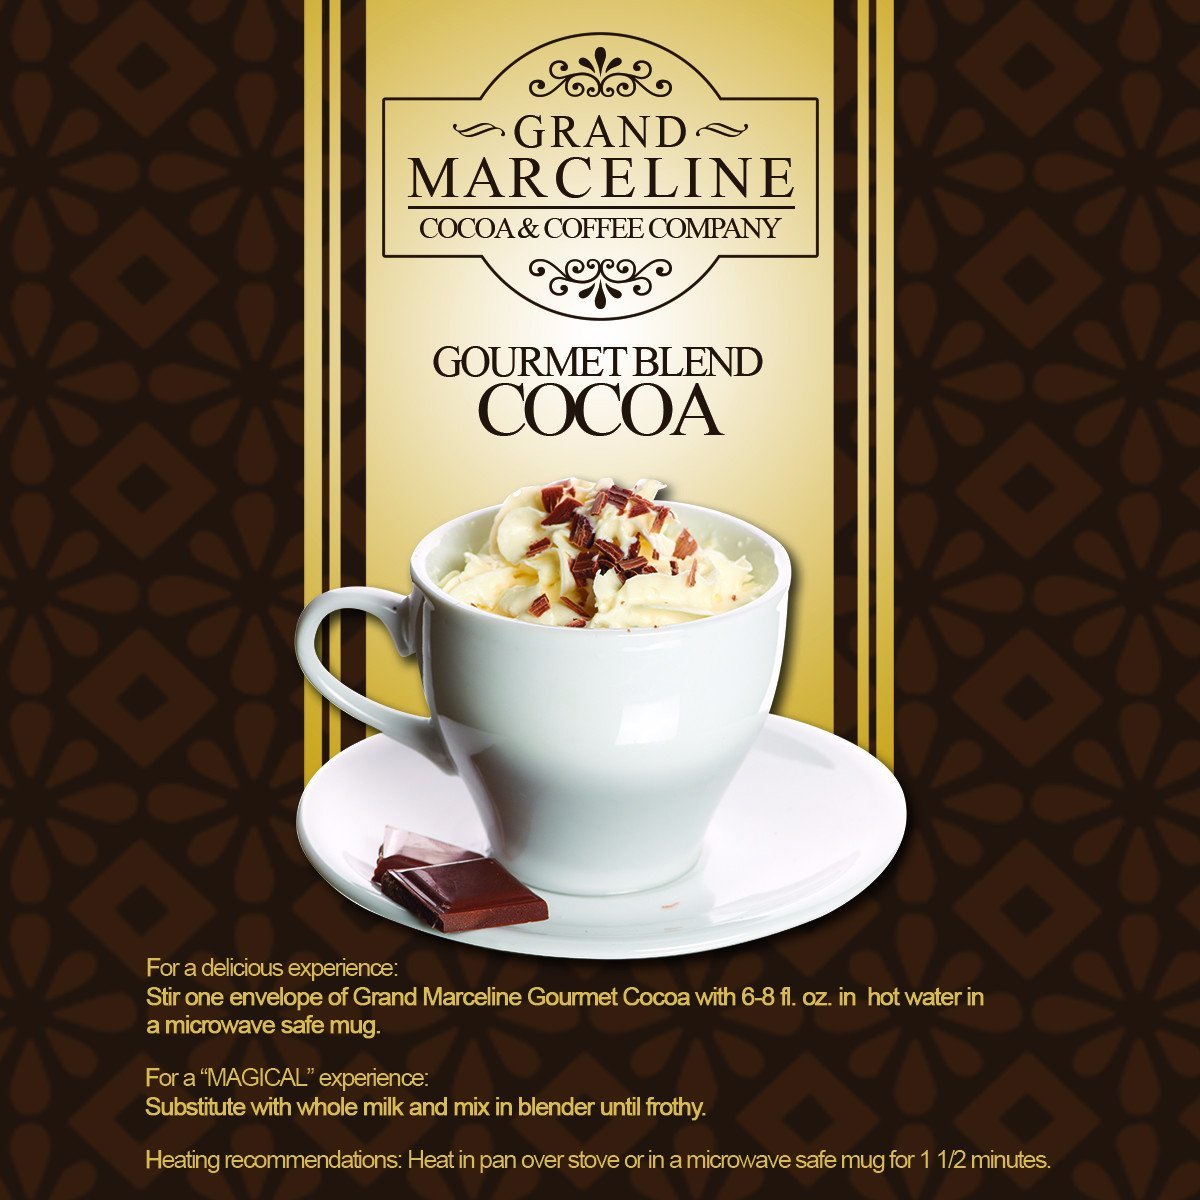 Grand Marceline's gourmet blend cocoa